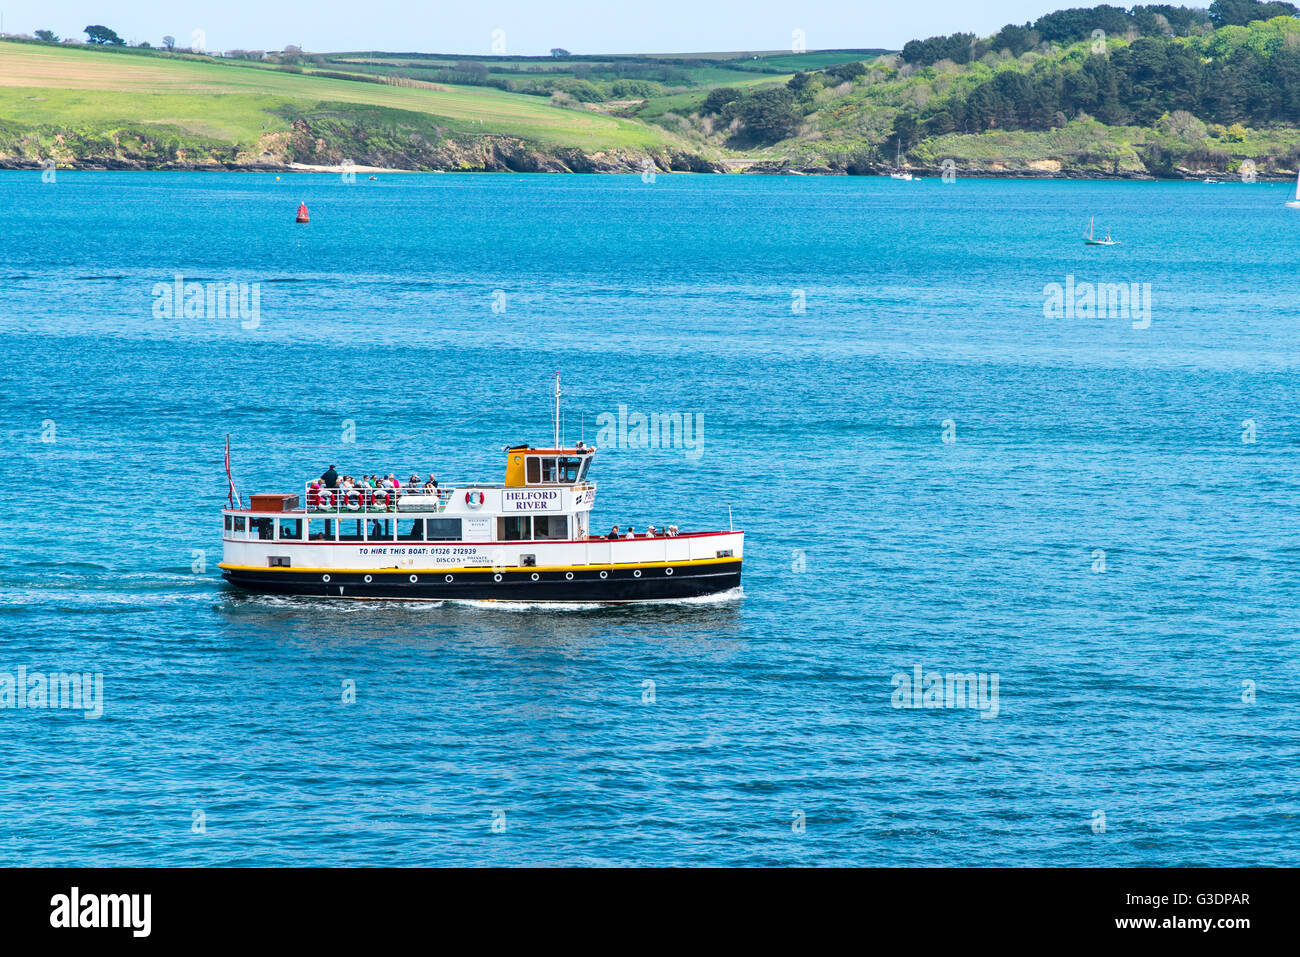 La Princessa MV, un bateau de tourisme opérant à partir de Pendennis Falmouth.Vu de point avec la péninsule de Roseland au-delà. Banque D'Images